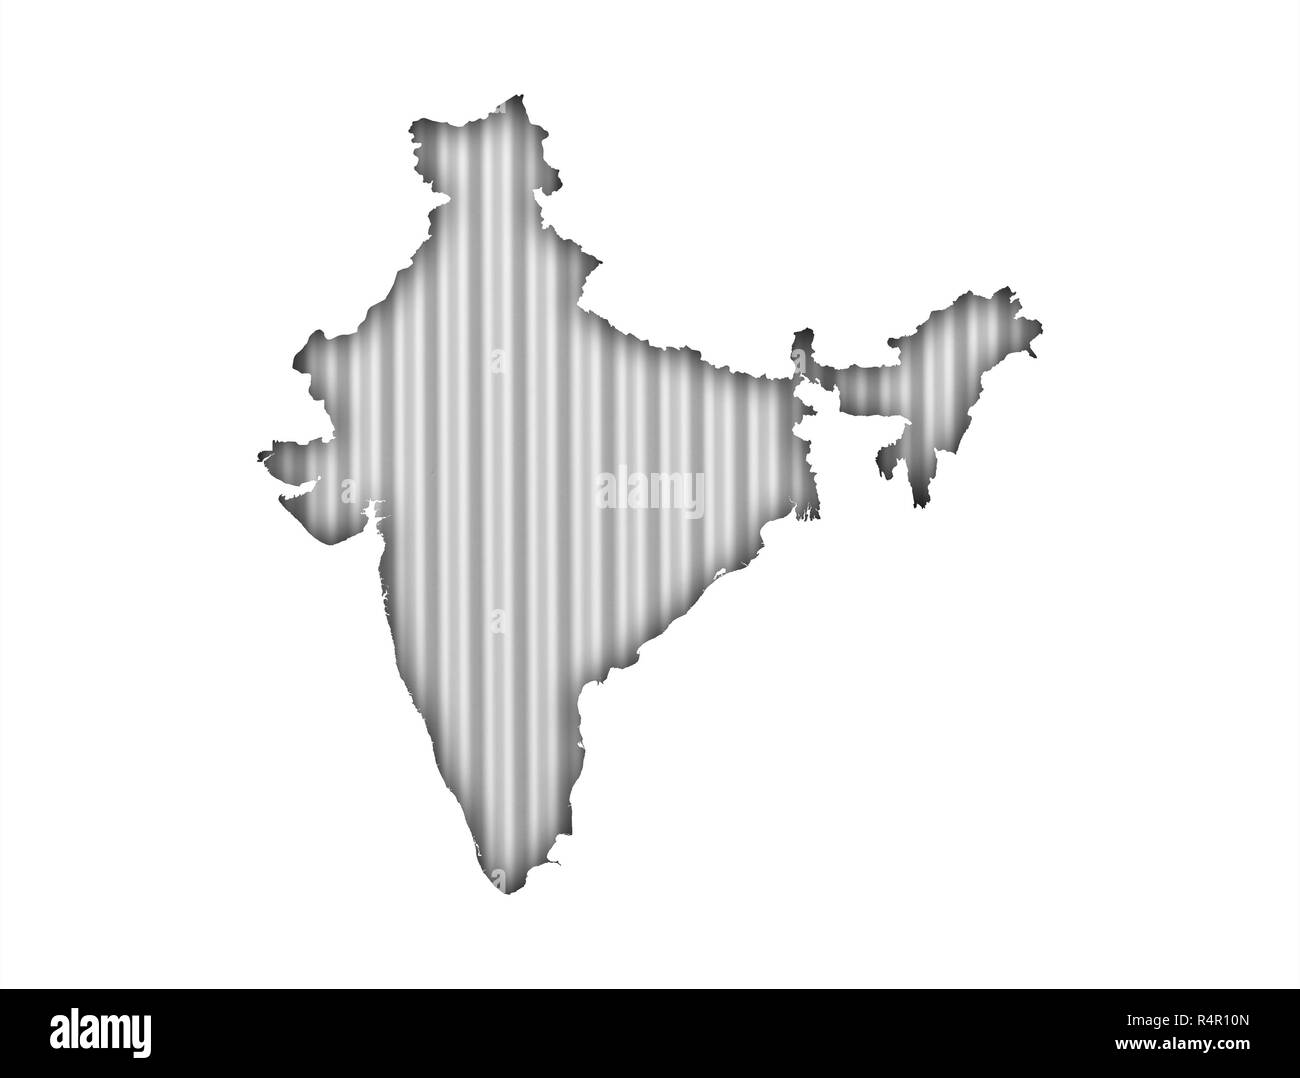 map of india on corrugated iron Stock Photo